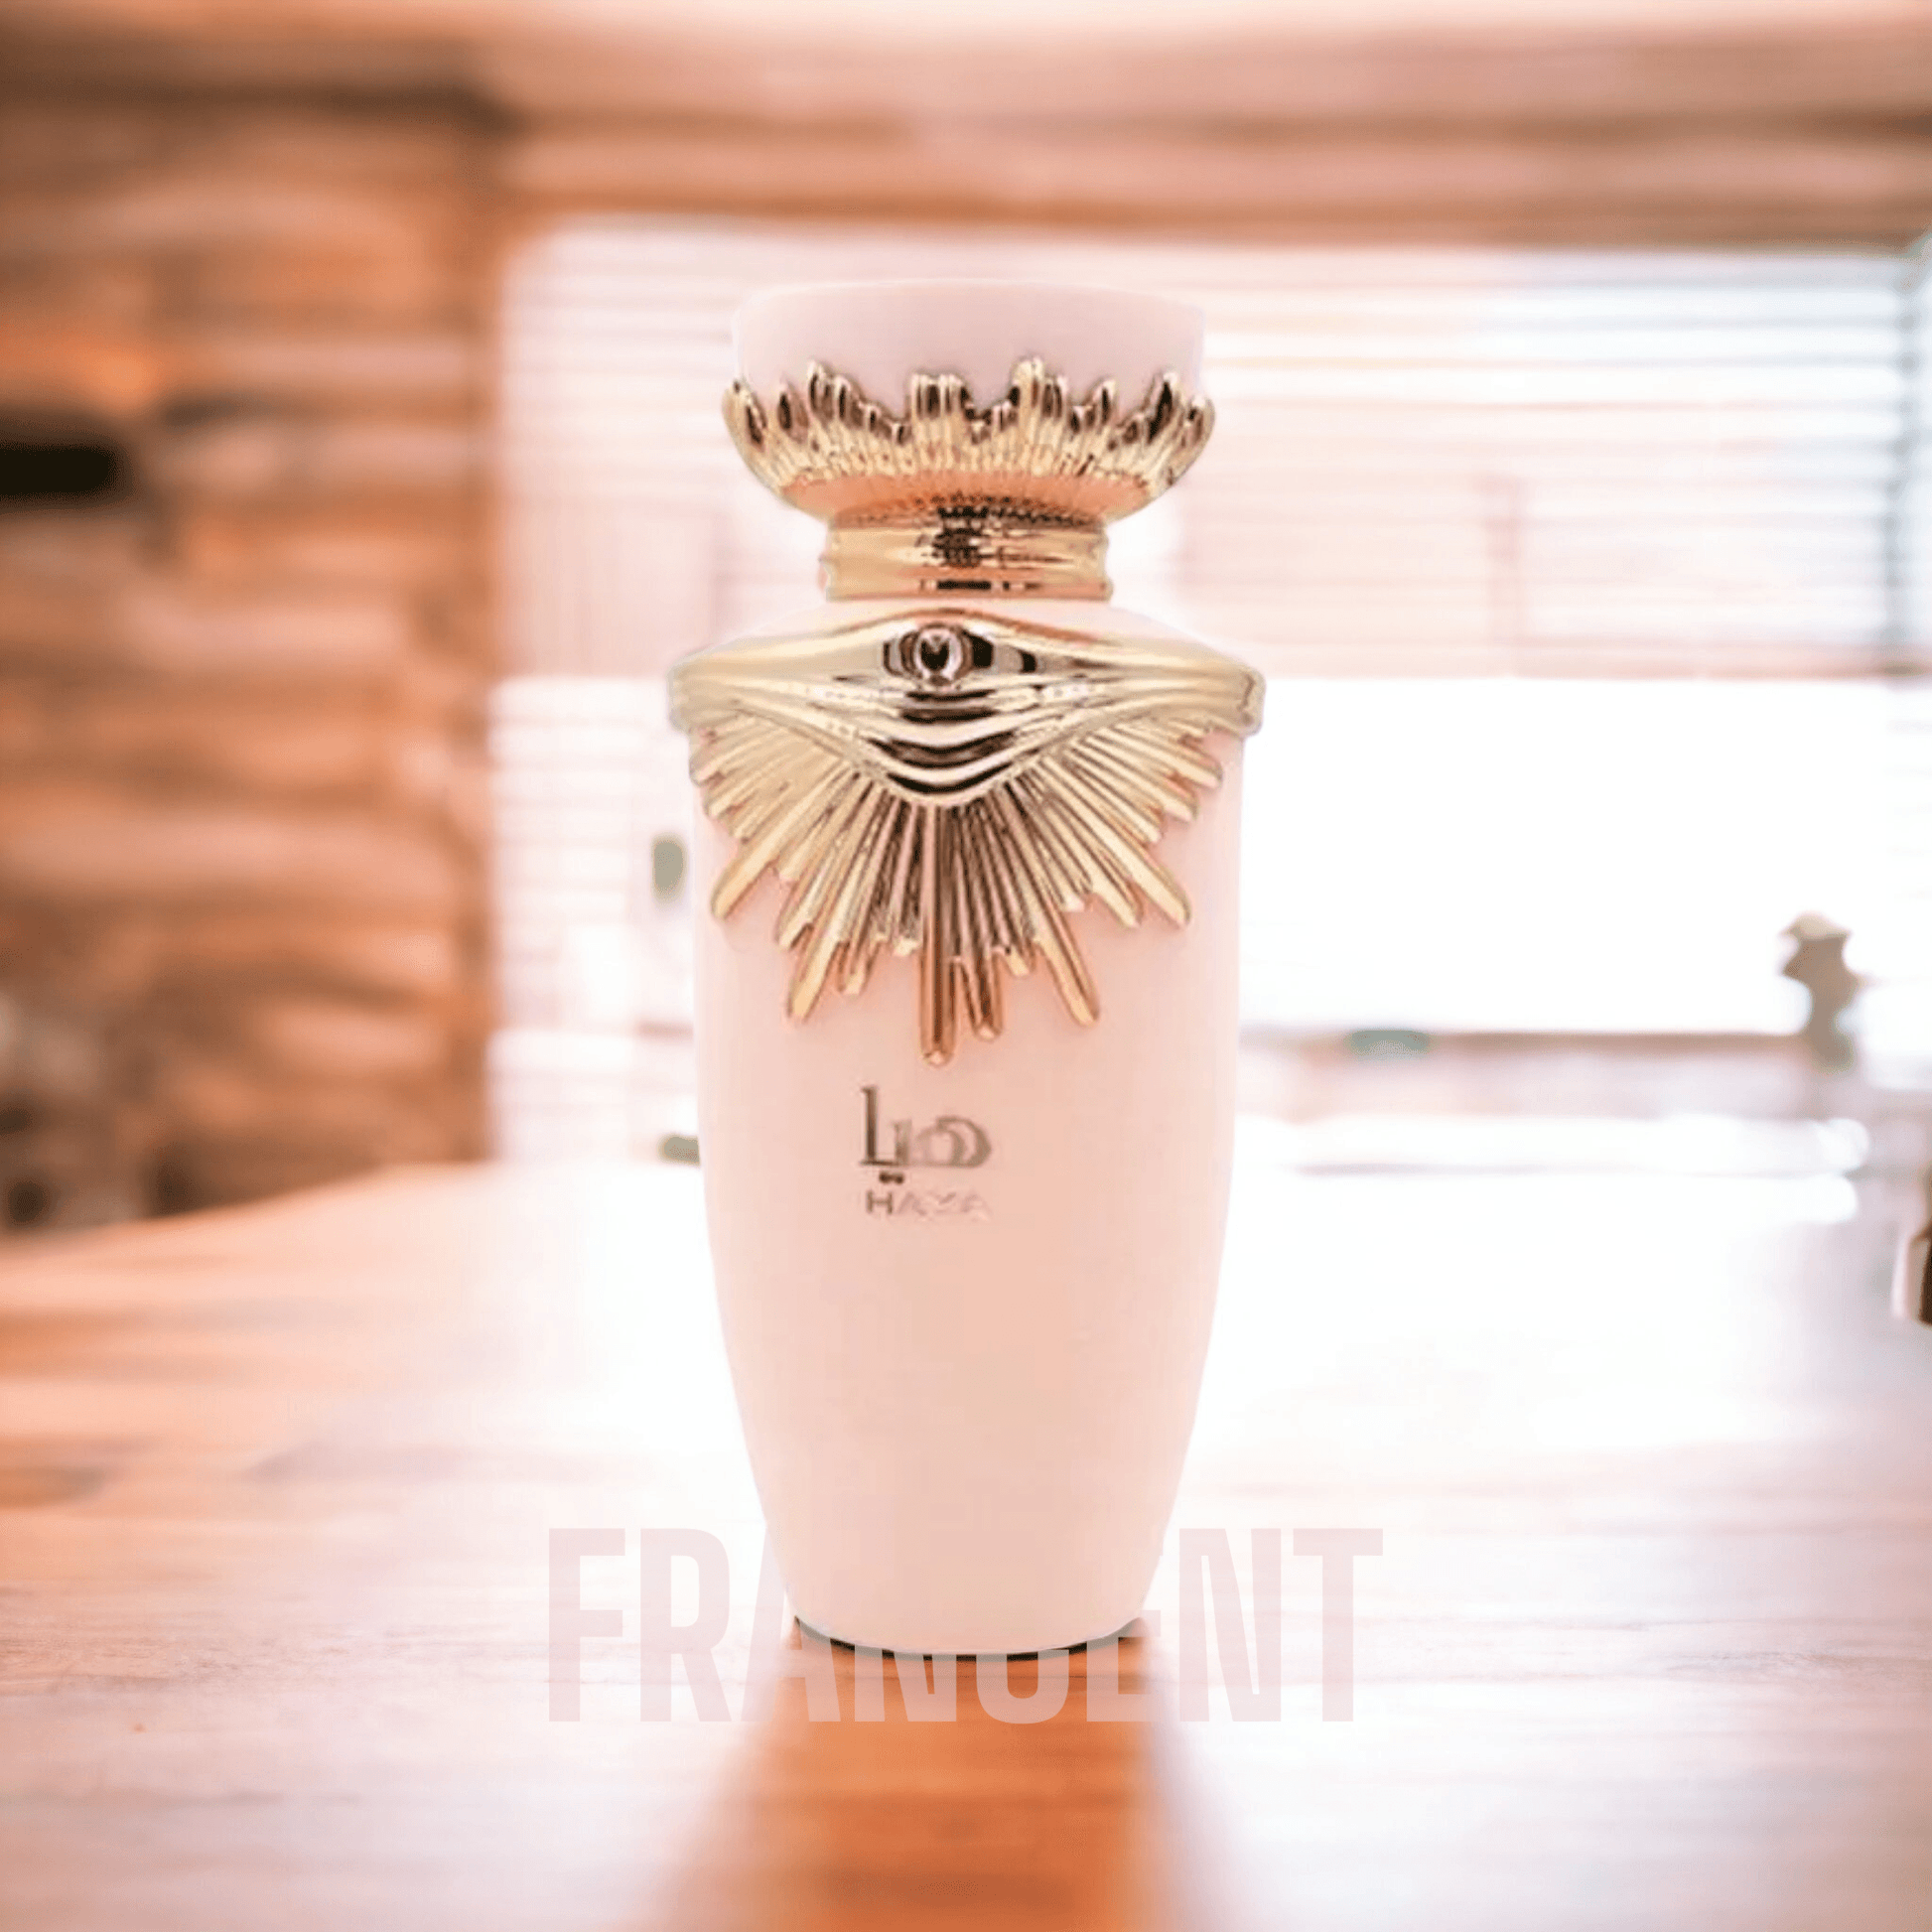 Lattafa | Haya - Francent Perfumes